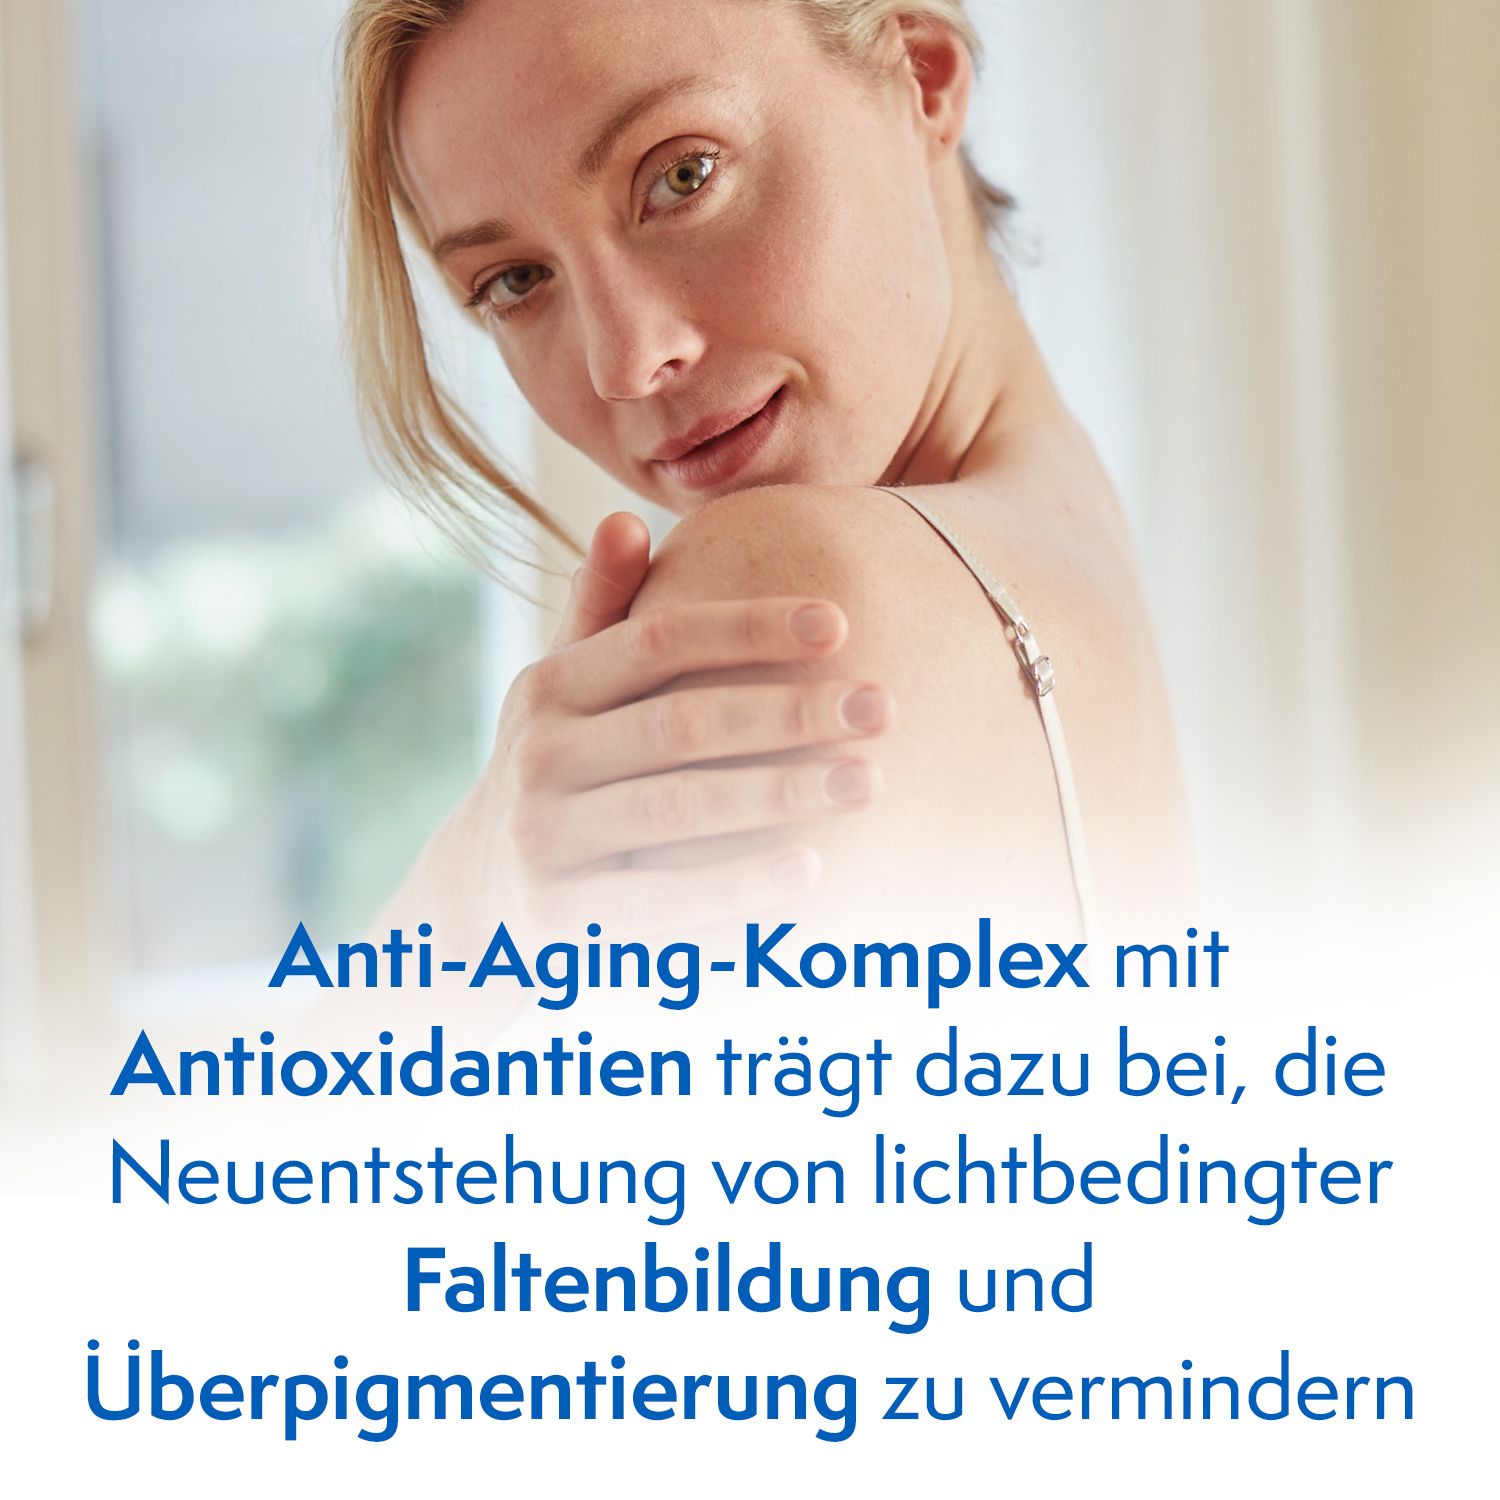 Ladival® Anti-Age und Anti-Pigmentflecken Sonnencreme LSF 50+ mit Anti-Aging-Komplex für Gesicht, Hände und Dekolleté